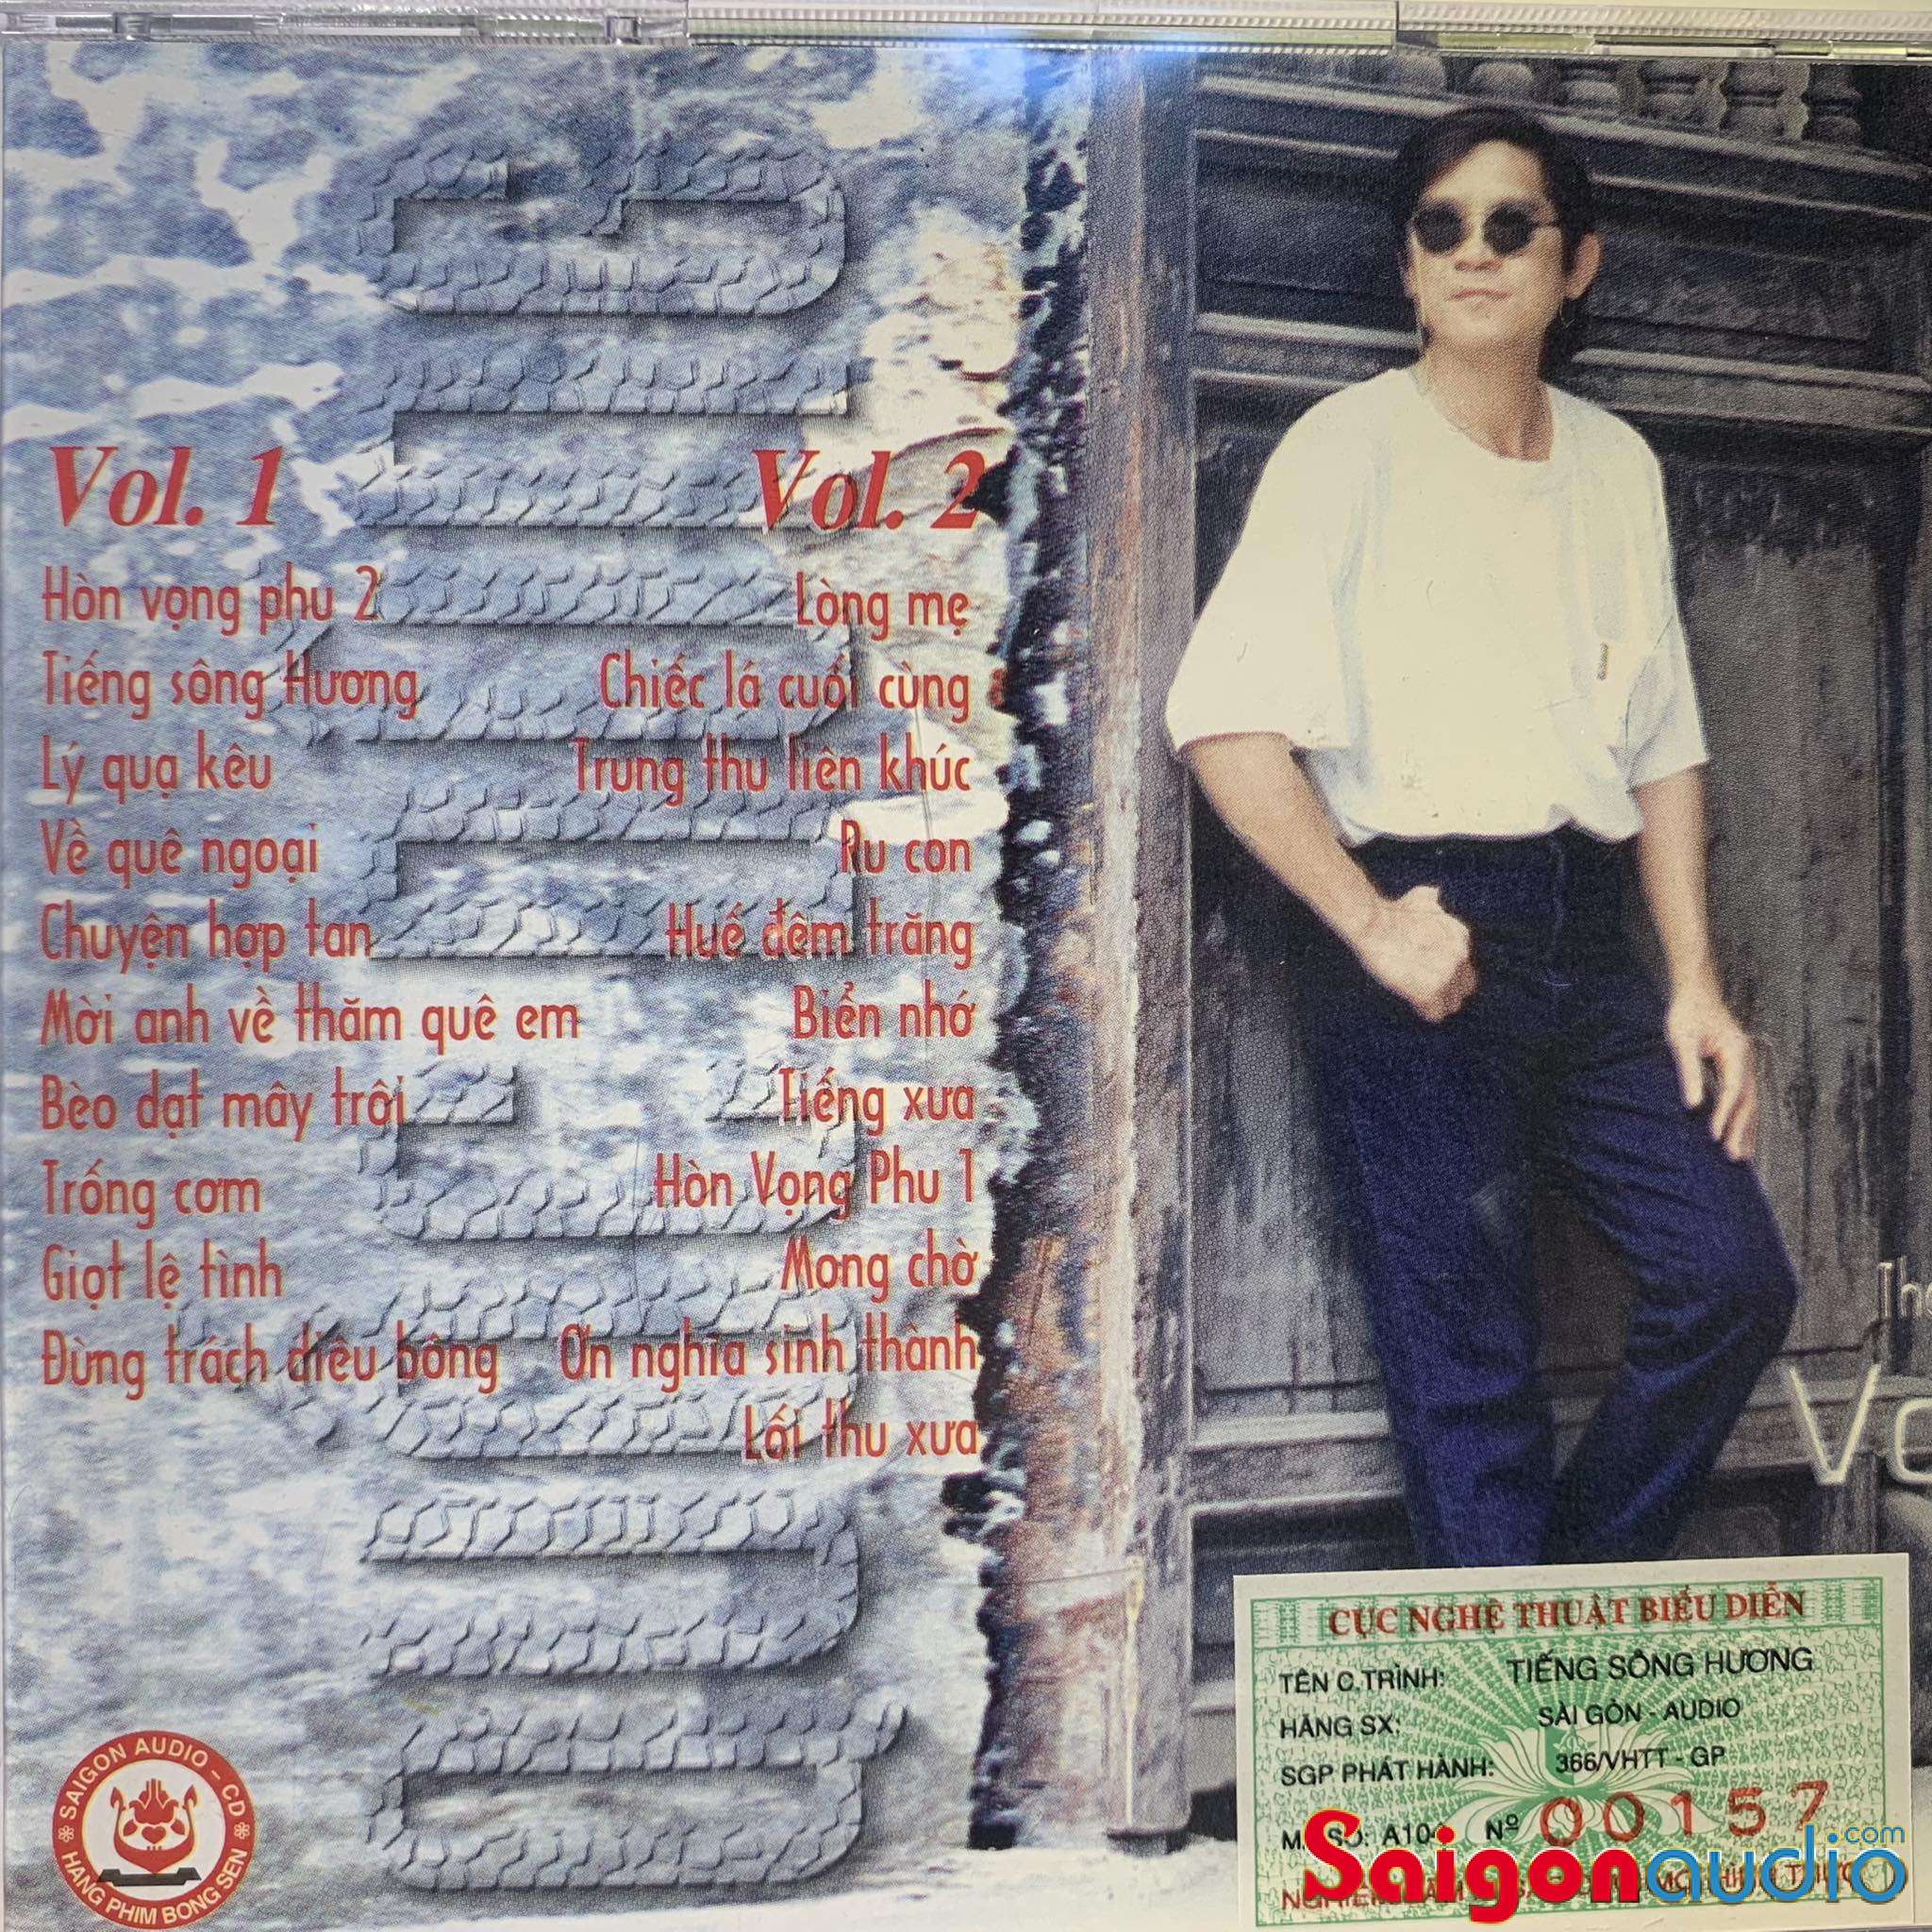 Đĩa CD gốc Hòa Tấu Quốc Dũng - Tiếng Sông Hương Vol.1 (Free ship khi mua 2 đĩa CD cùng hoặc khác loại)